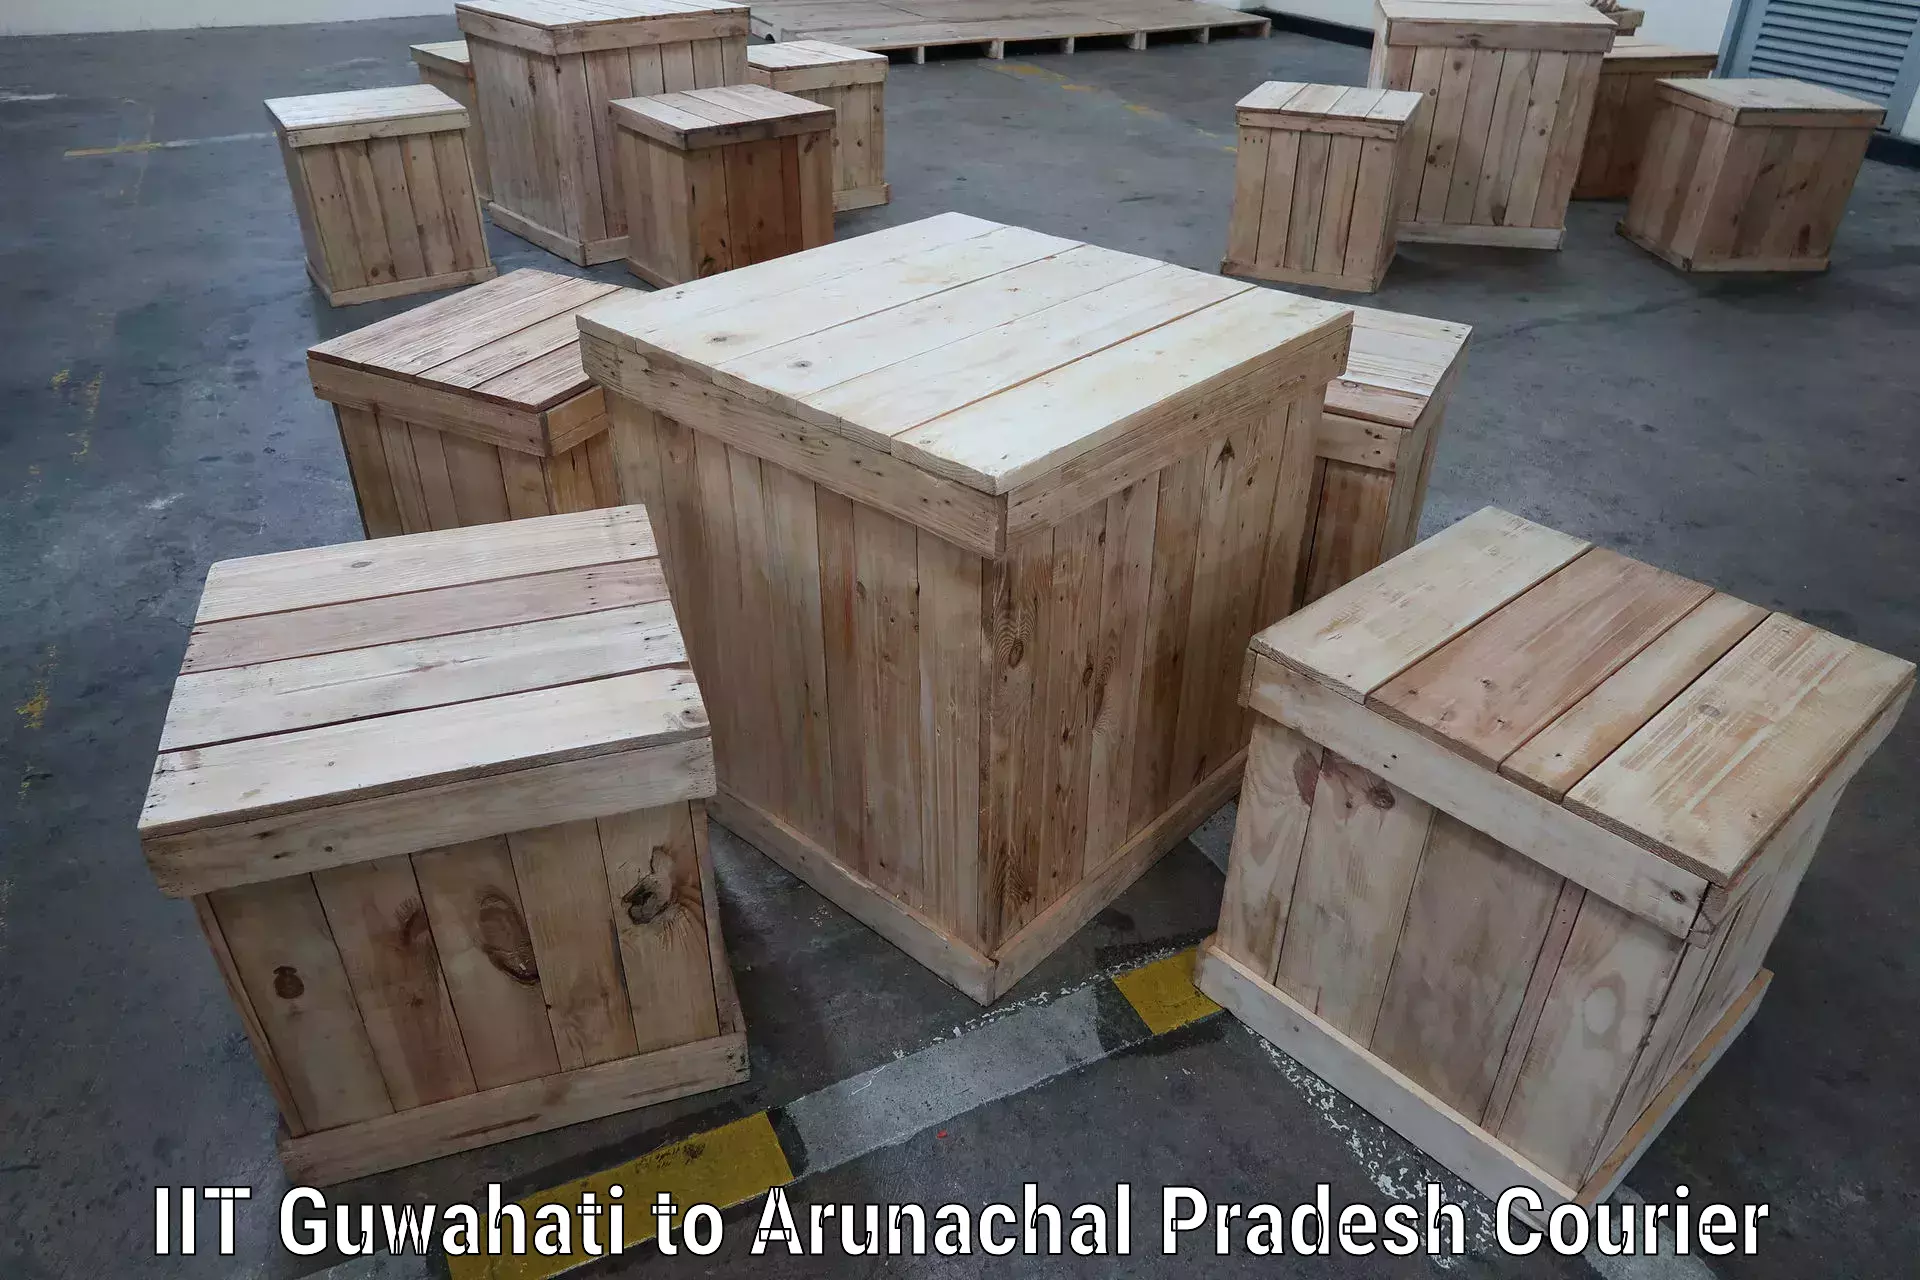 Ocean freight courier IIT Guwahati to Arunachal Pradesh